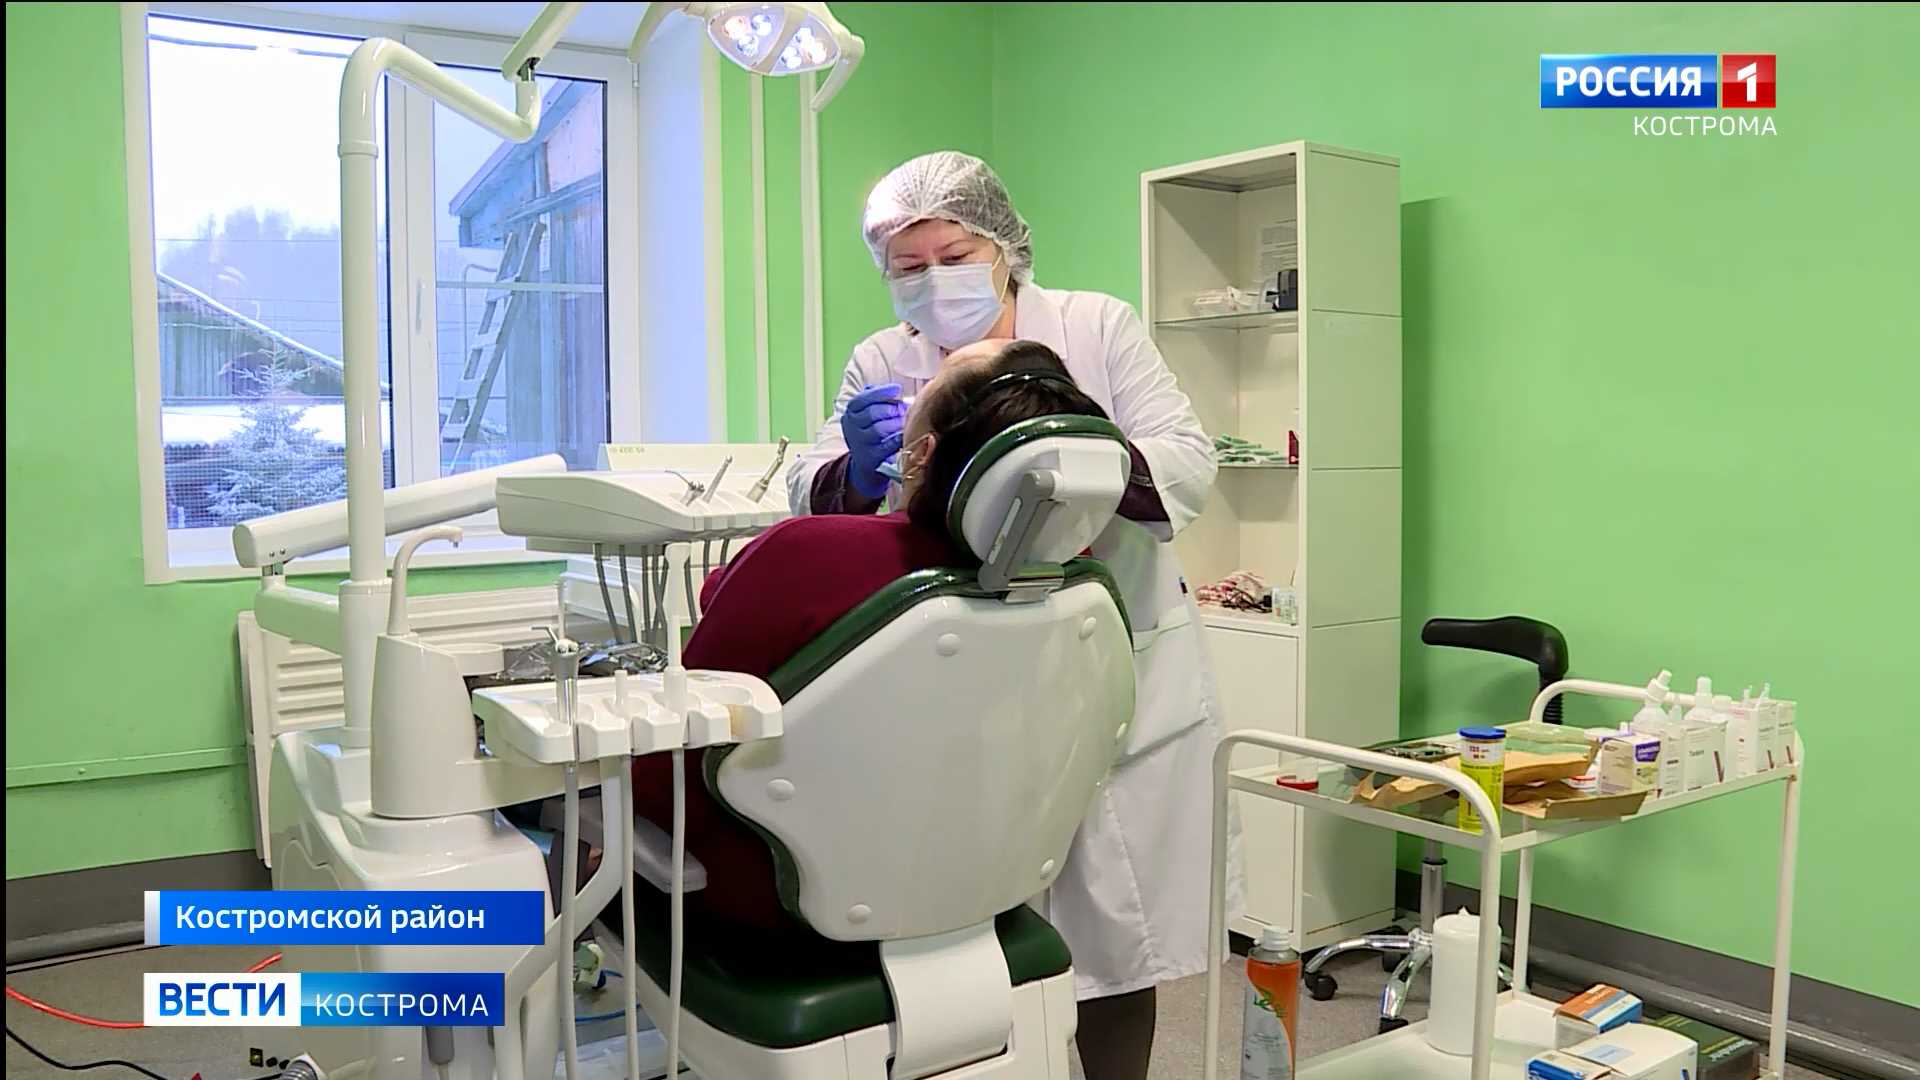 Под Костромой открылся современный зубной кабинет